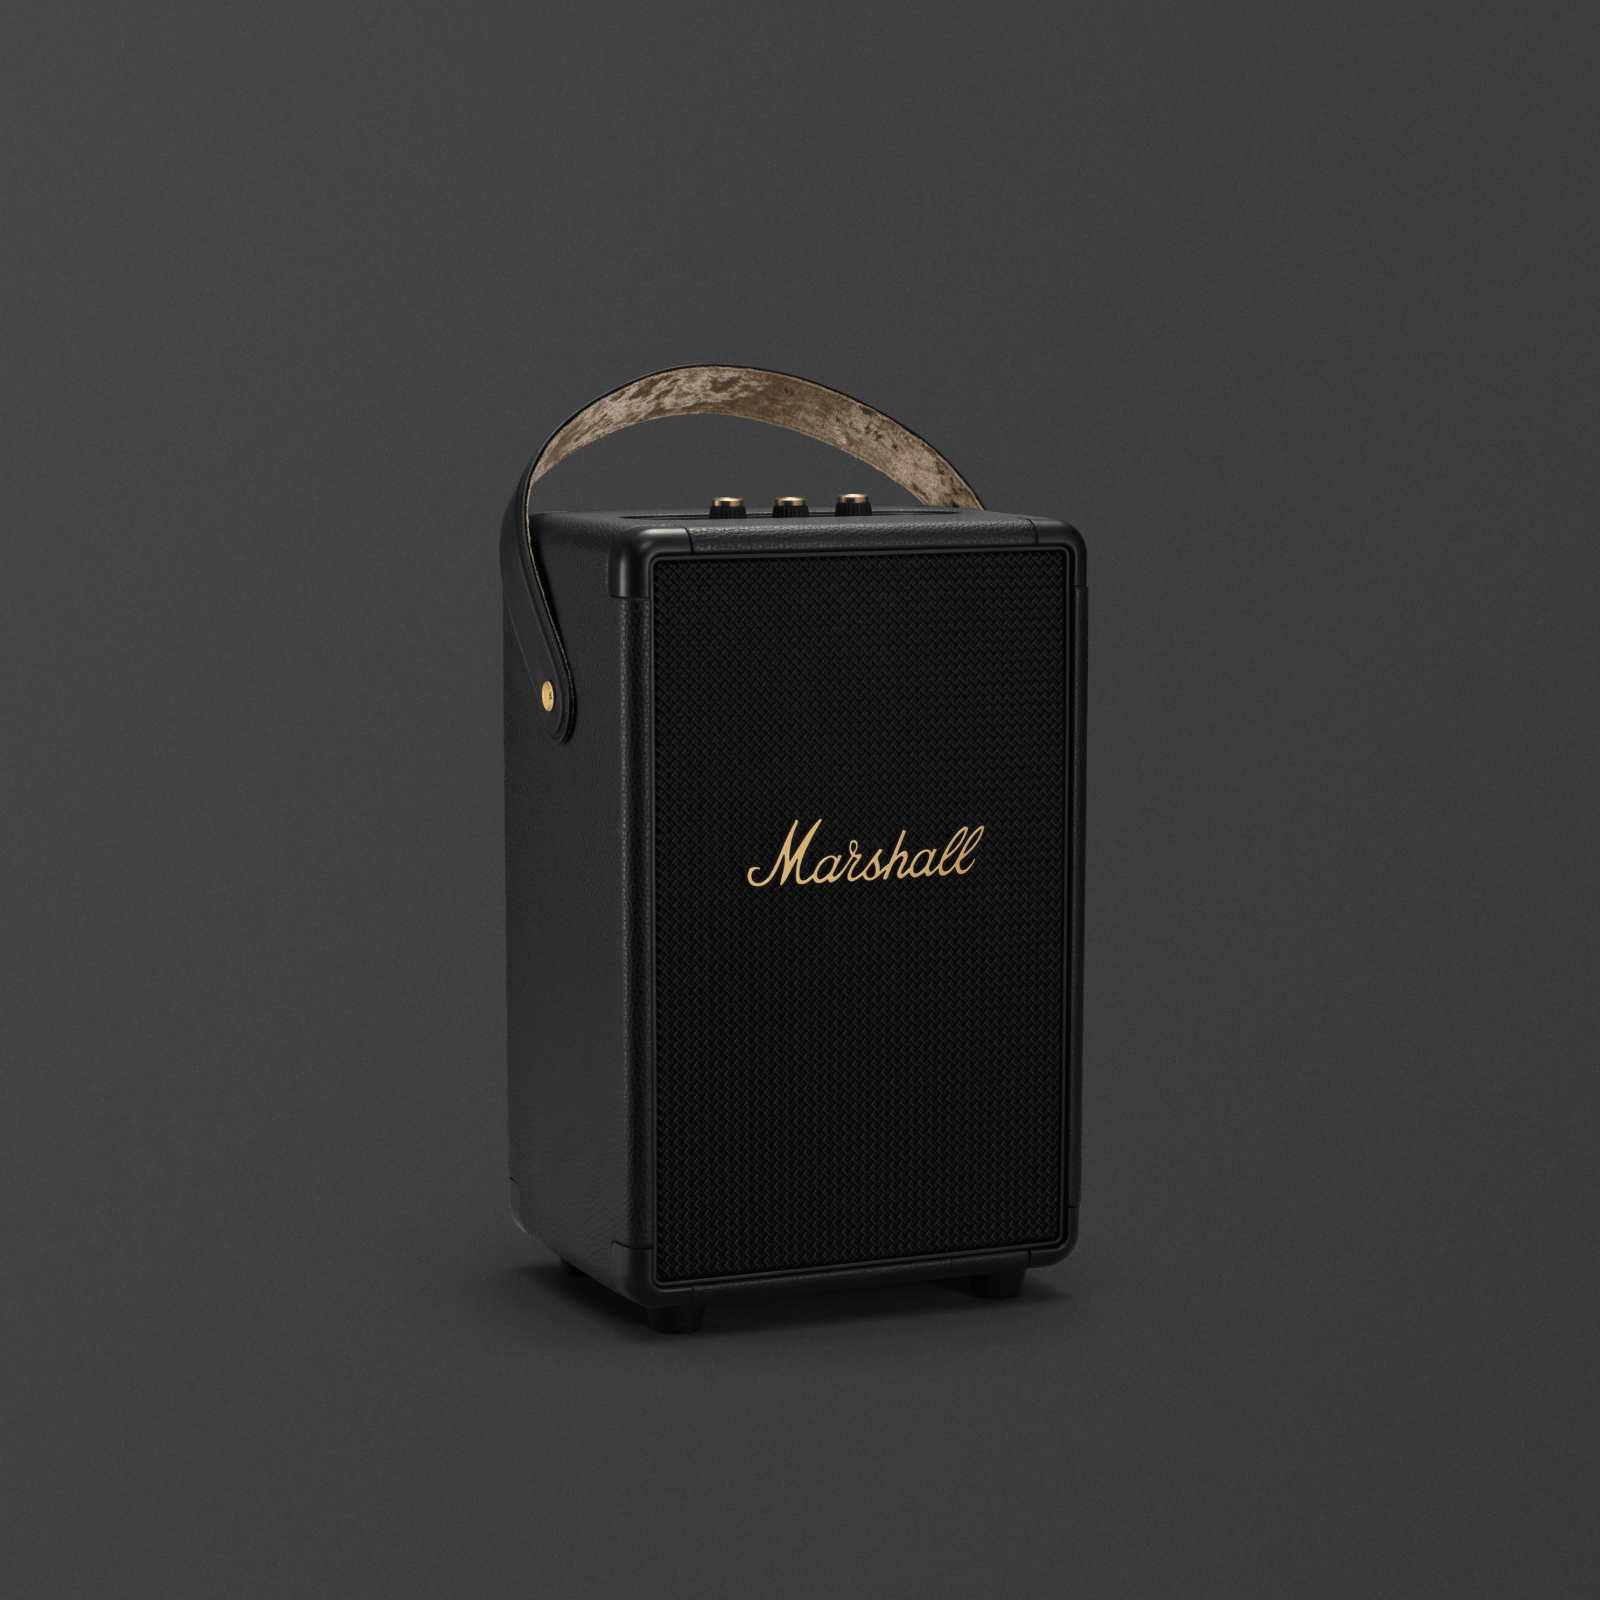 Der tragbare Bluetooth-Lautsprecher Marshall Tufton Black and Brass ist ein schlanker und eleganter schwarzer Lautsprecher, der leistungsstarken Sound liefert.